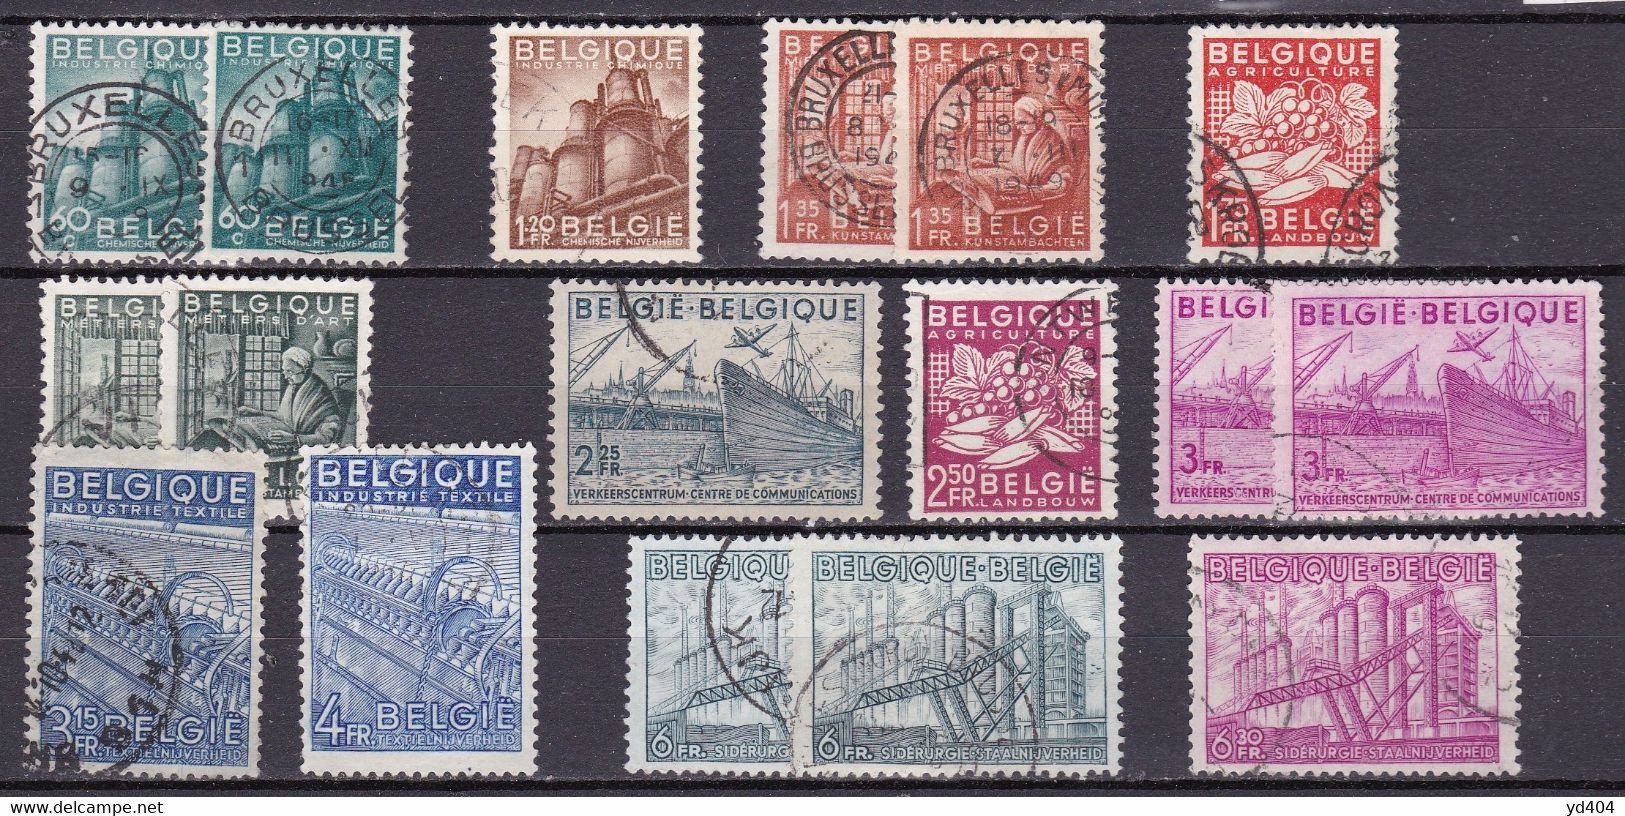 BE052 – BELGIQUE - BELGIUM – 1948 – NATIONAL INDUSTRIES – SG # 1217/28 USED 11,25 € - 1948 Export